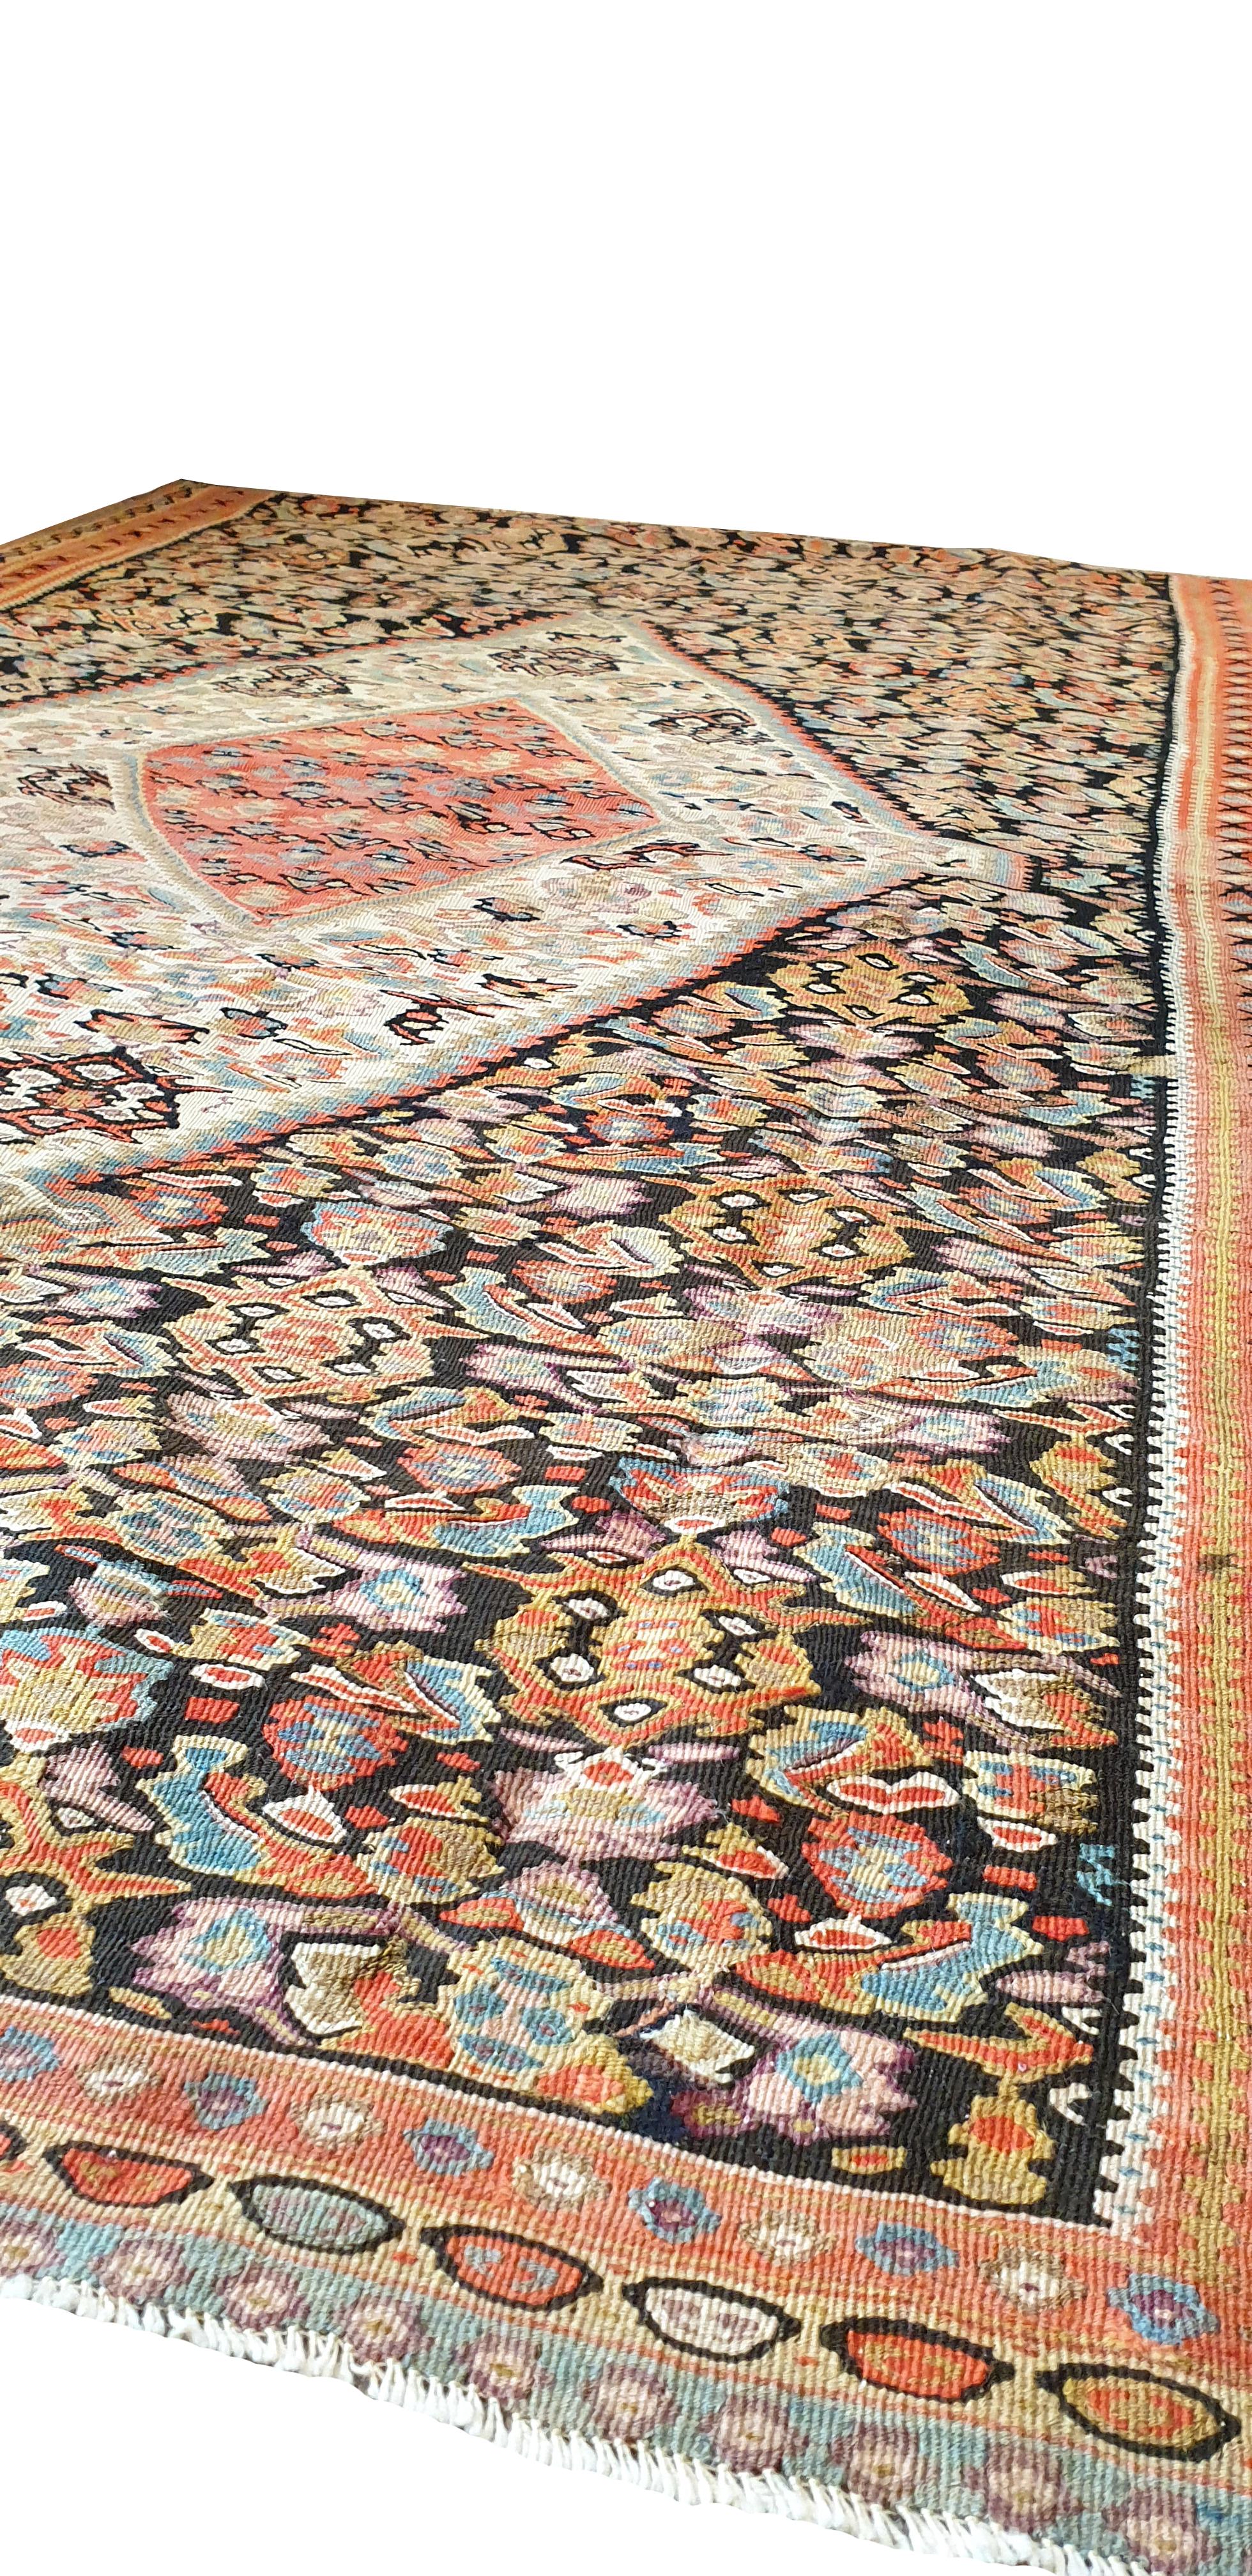 659 - schöner Kelim aus dem 19. Jahrhundert mit schönen, feinen Medaillonmustern in der Mitte und schönen Farben wie rosa, orange, gelb, grün und dunkelbraun, komplett handgewebt mit Wolle auf Baumwollgrund.
   